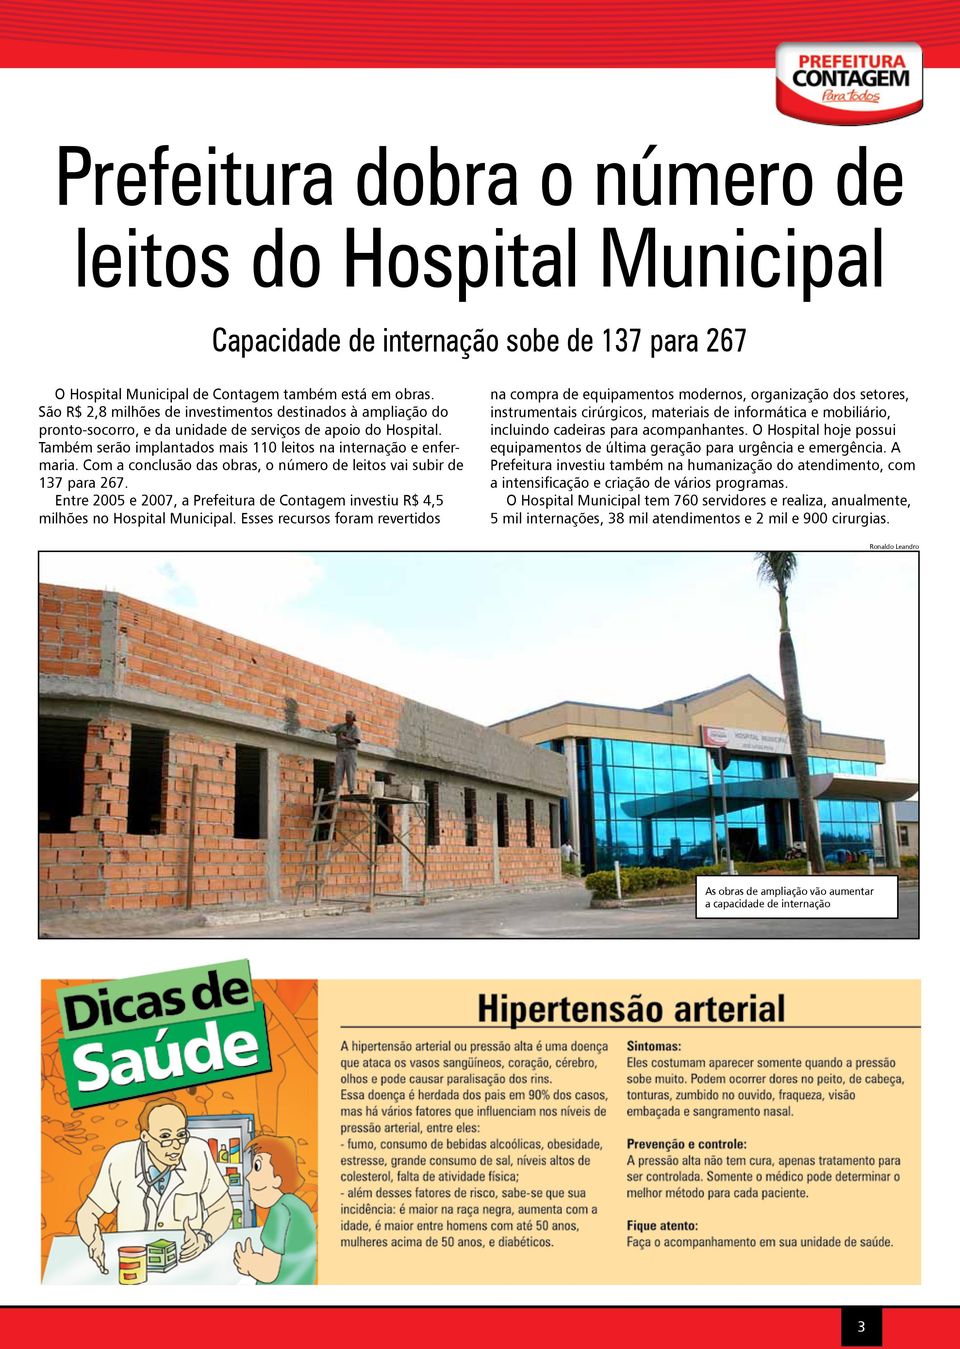 Com a conclusão das obras, o número de leitos vai subir de 137 para 267. Entre 2005 e 2007, a Prefeitura de Contagem investiu R$ 4,5 milhões no Hospital Municipal.